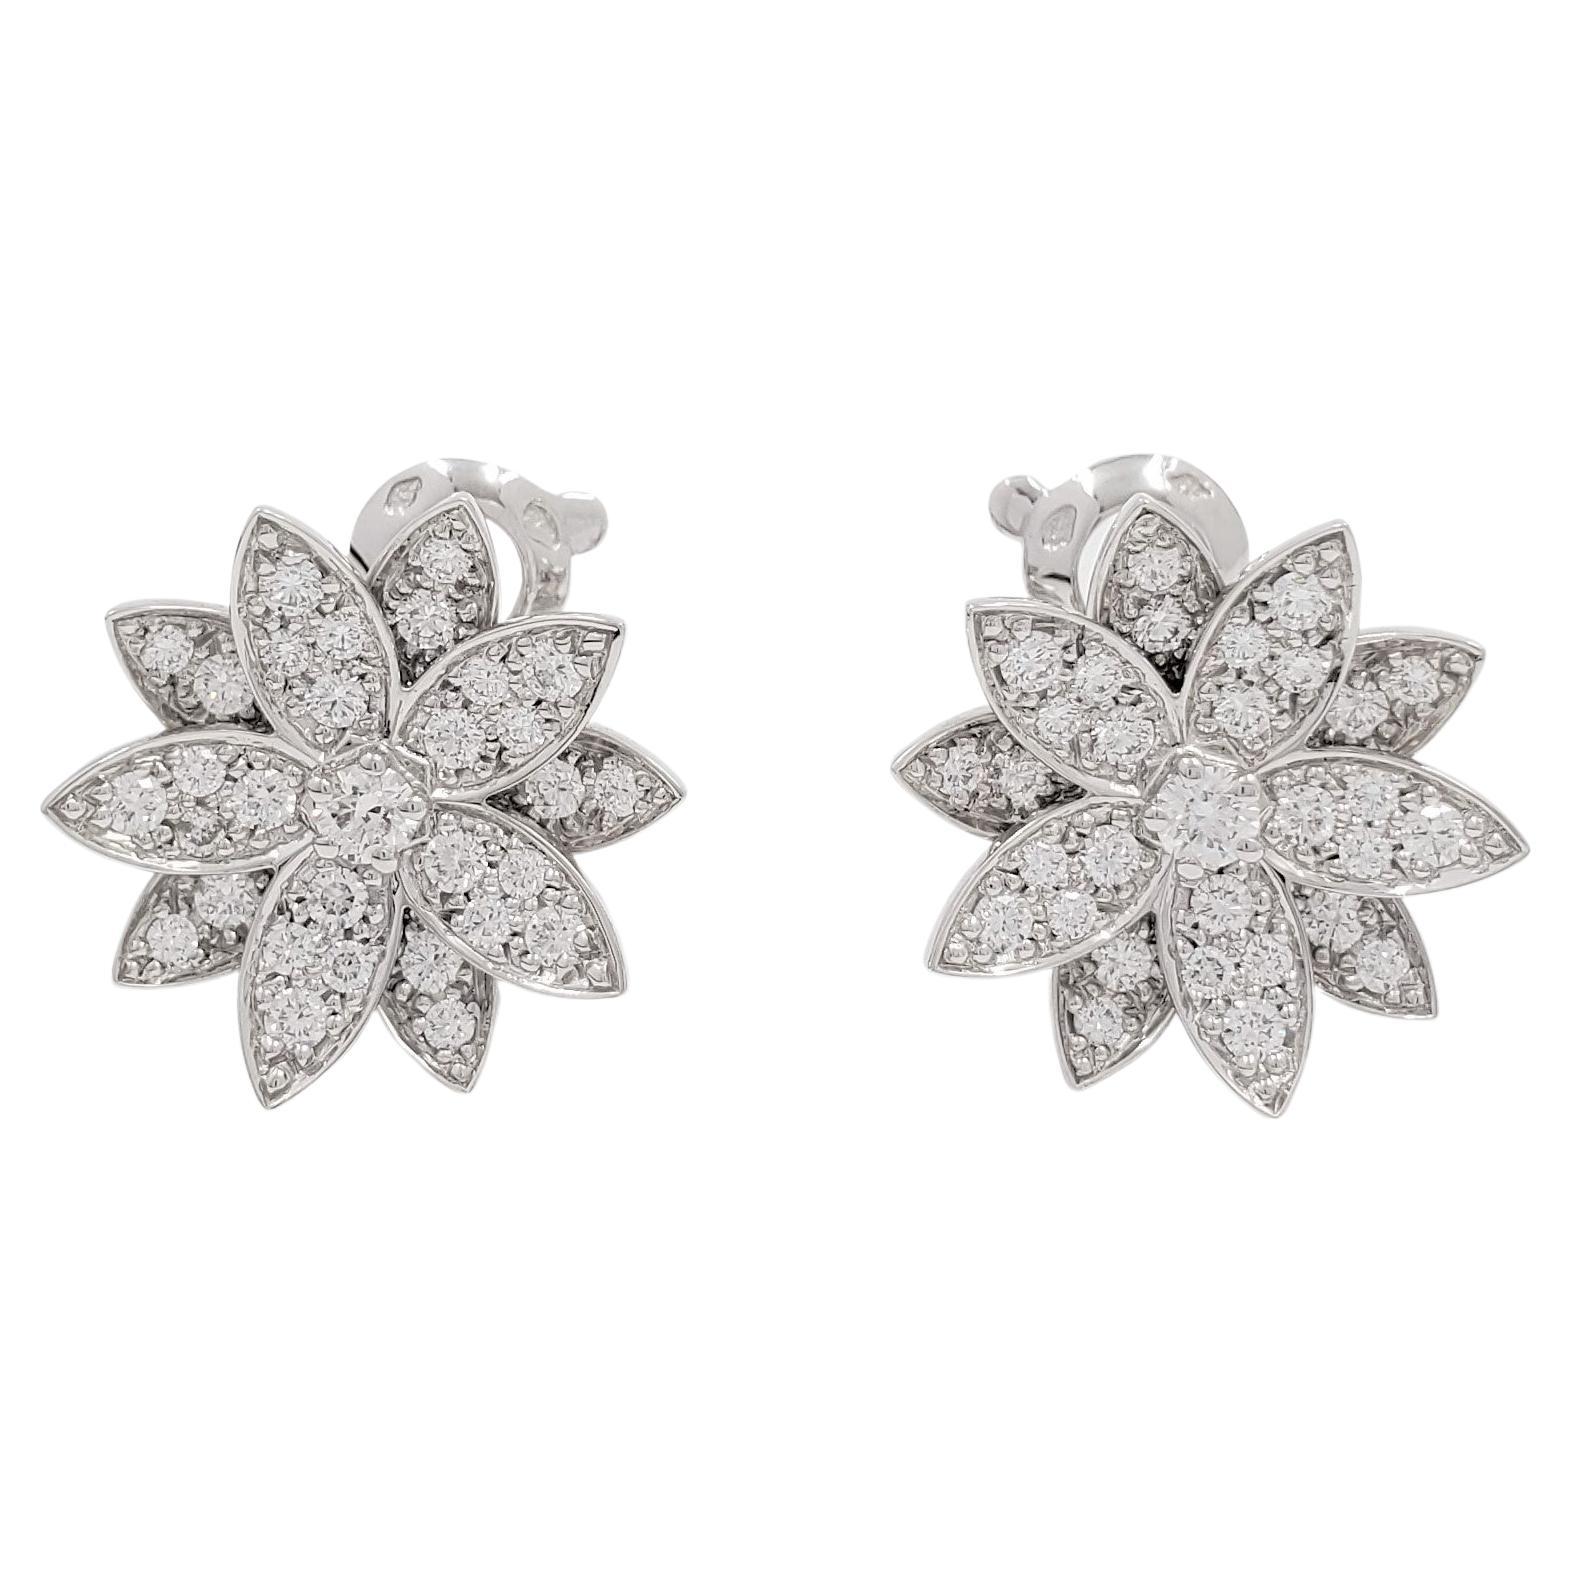 Van Cleef & Arpels 'Lotus' White Gold Diamond Earrings, Small Model